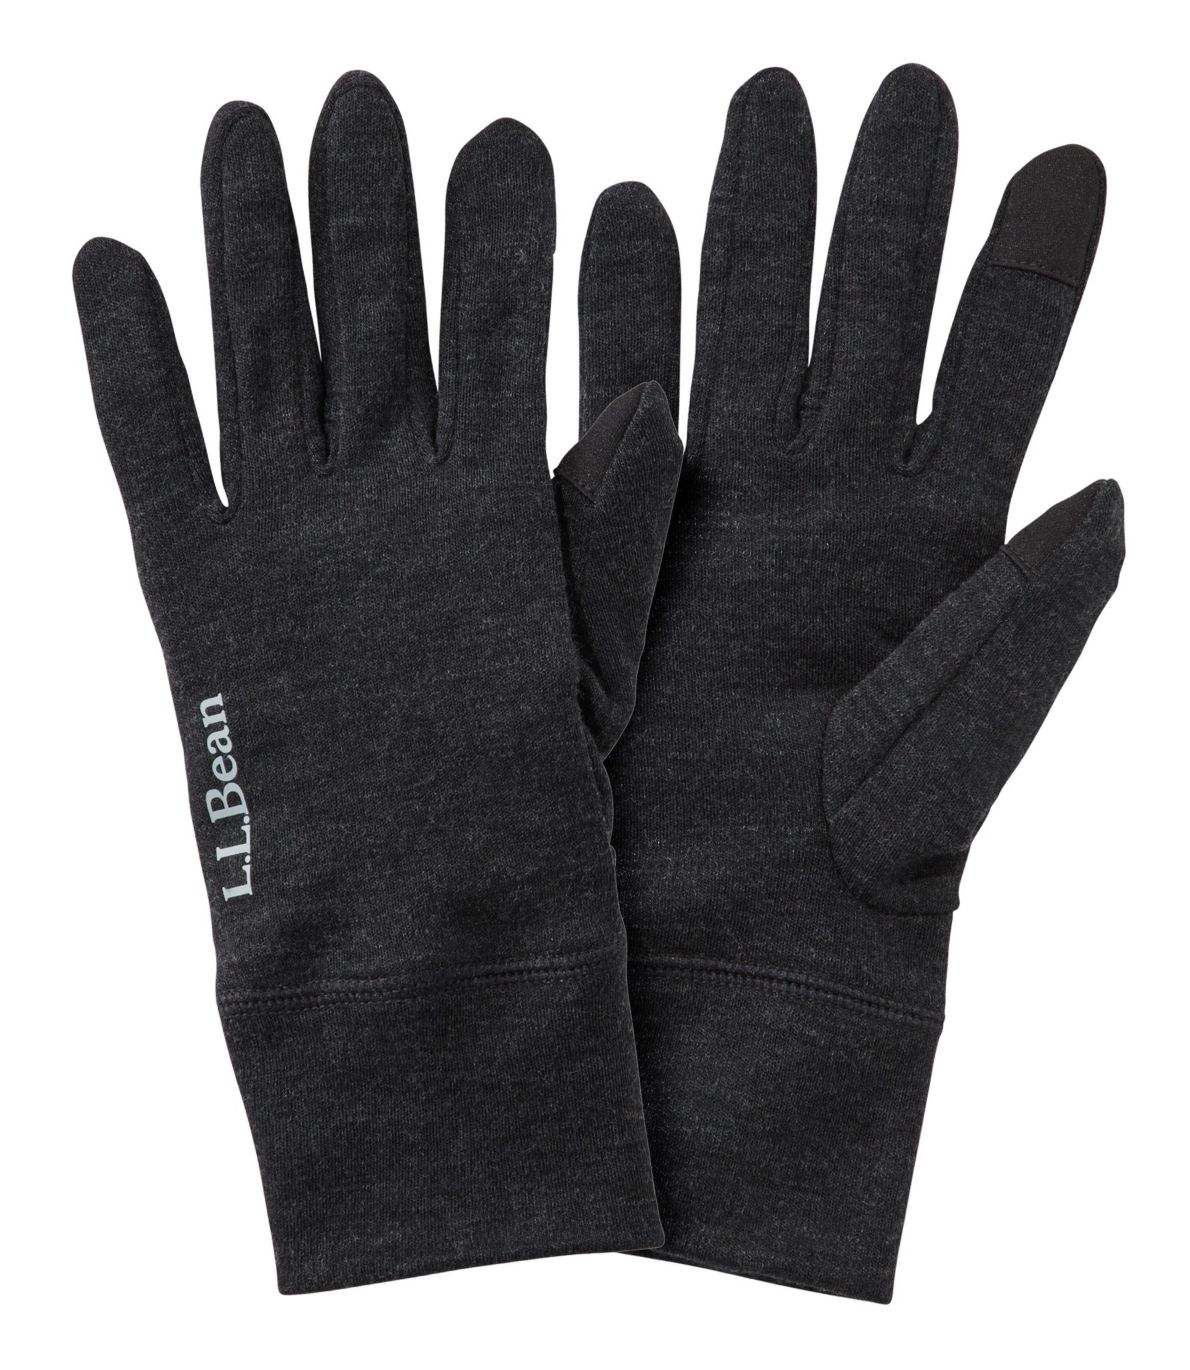 Men's Cresta Wool 250 Liner Gloves at L.L. Bean